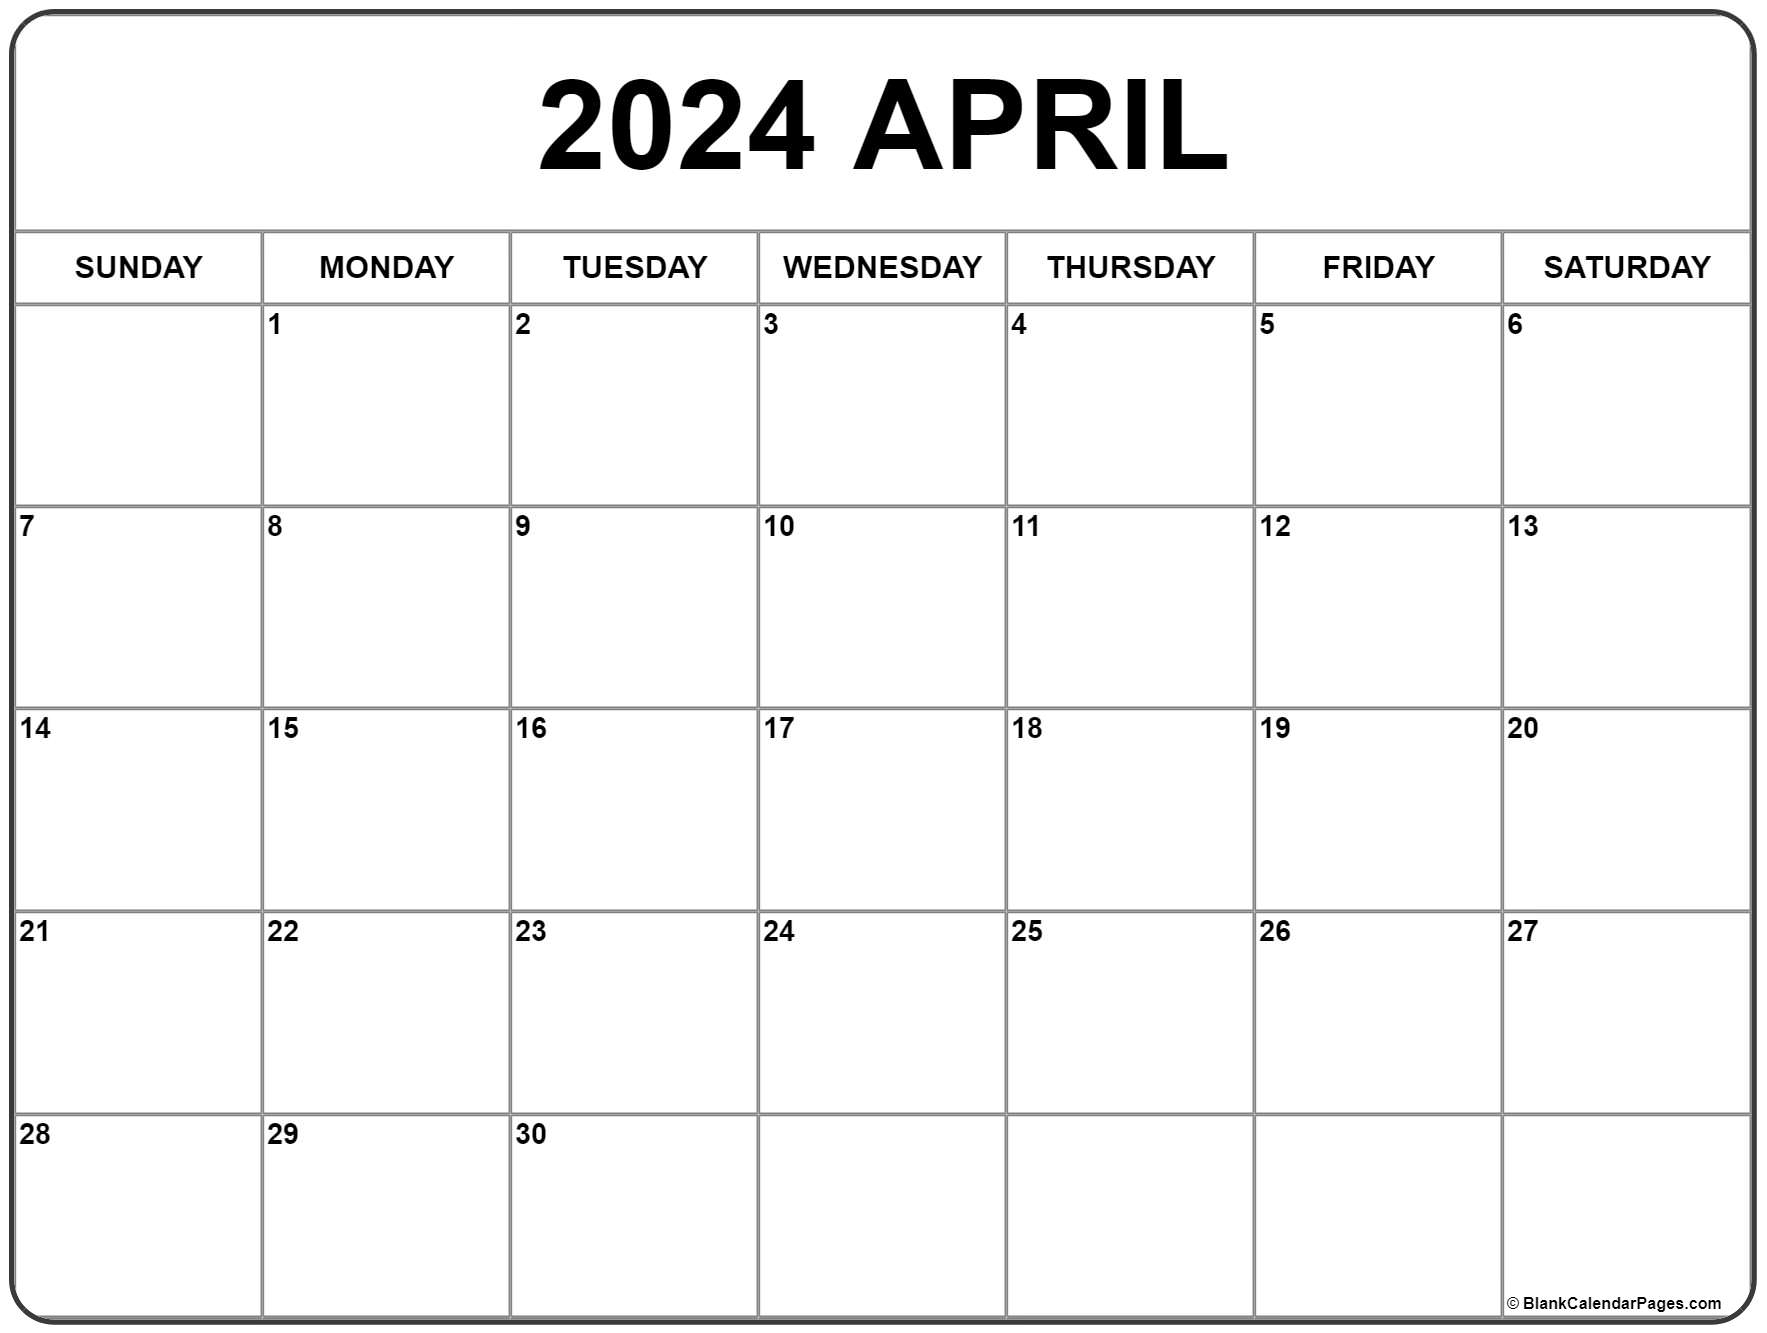 April 2024 Calendar | Free Printable Calendar for Blank April 2024 Printable Calendar